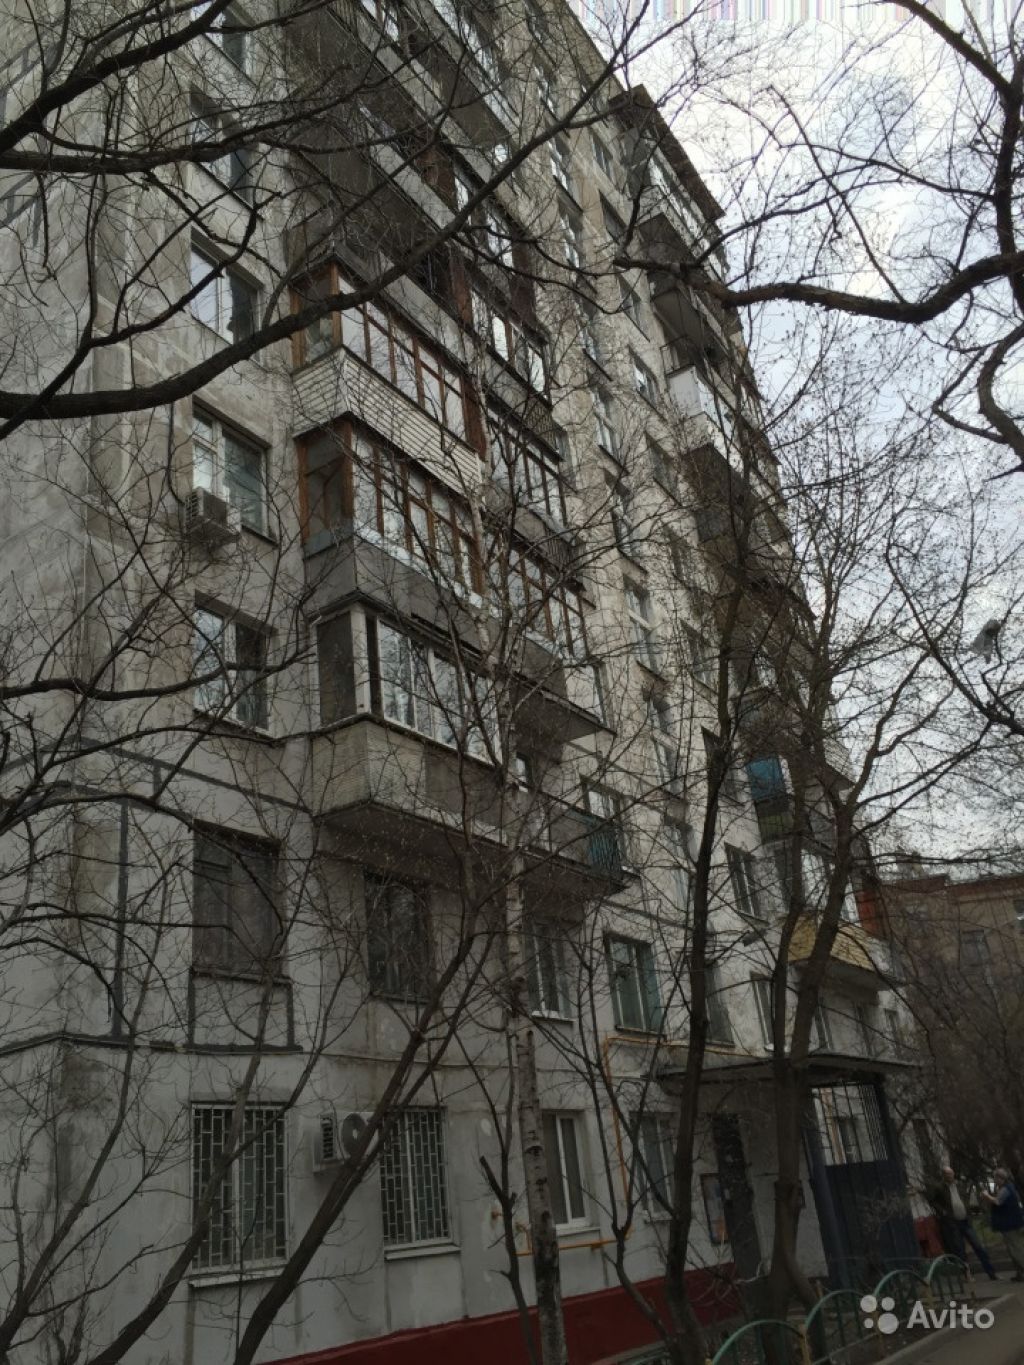 Продам квартиру 1-к квартира 34.5 м² на 12 этаже 12-этажного панельного дома в Москве. Фото 1